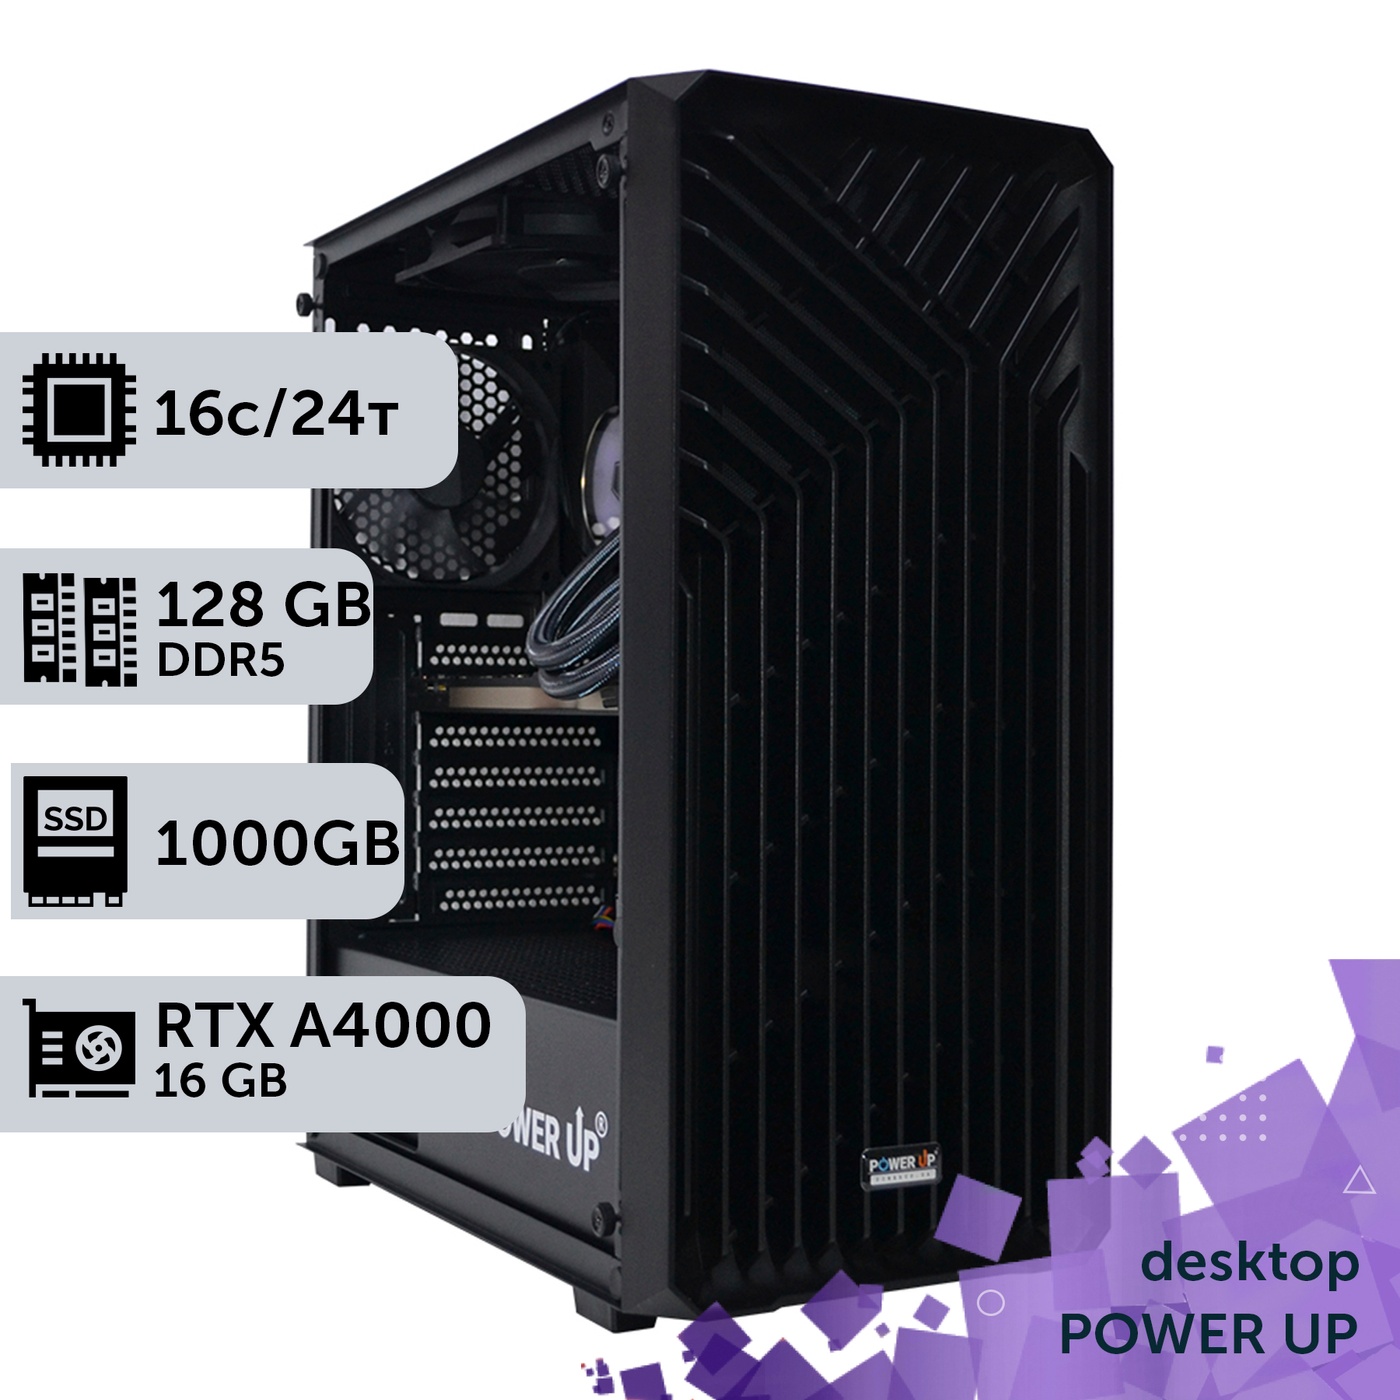 Рабочая станция PowerUp Desktop #278 Core i7 13700K/128 GB/SSD 1TB/NVIDIA Quadro RTX A4000 16GB